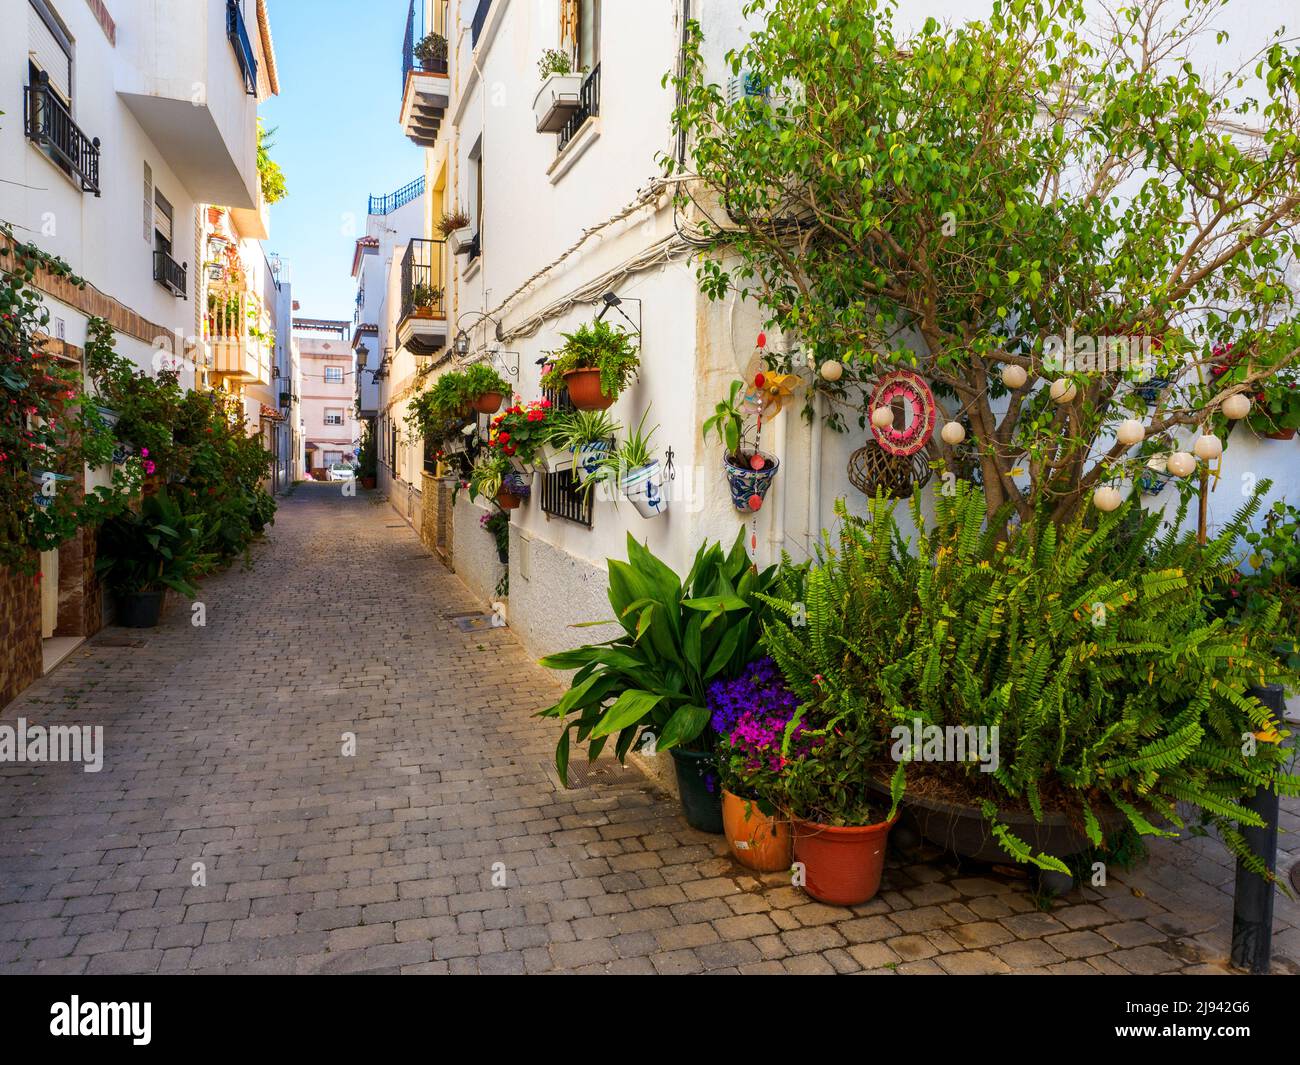 Straße im alten Teil der touristischen Stadt Almunecar an der costa Tropical - Andalusien, Spanien Stockfoto